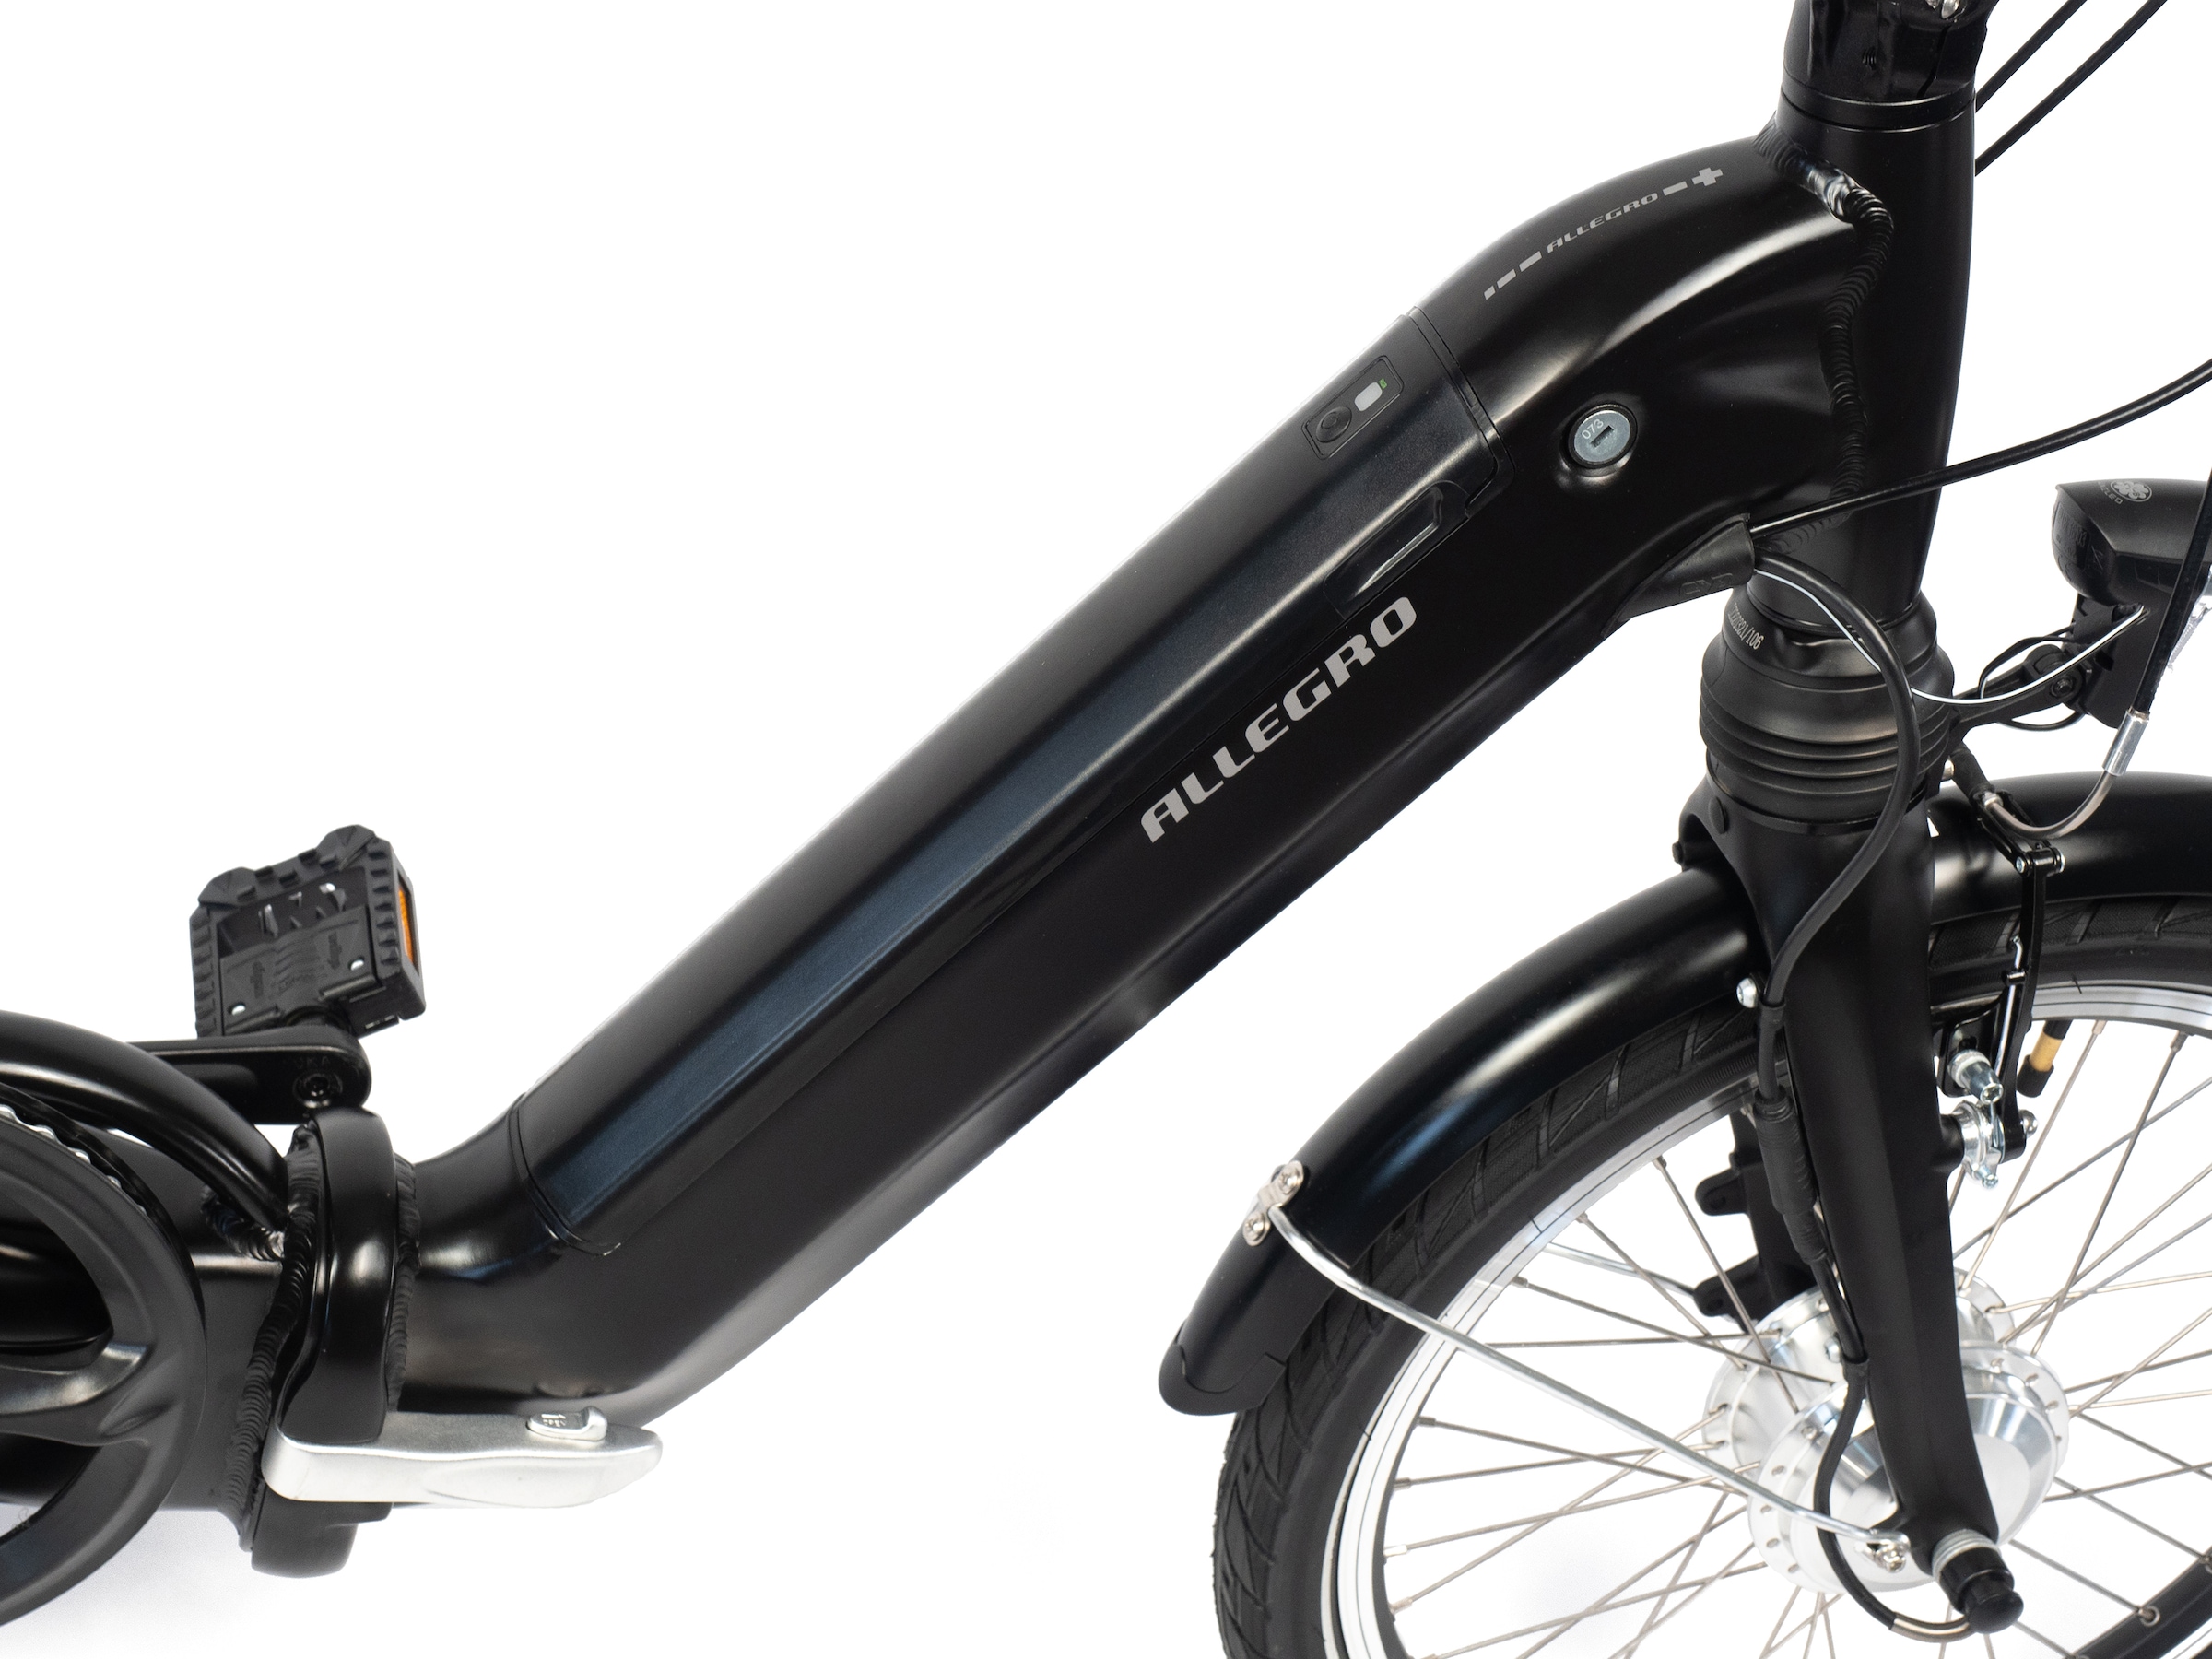 ALLEGRO E-Bike »Andi 3 Plus 374«, 3 Gang, Shimano, Nexus, Frontmotor 250 W, Pedelec, Elektrofahrrad für Damen u. Herren, Faltrad